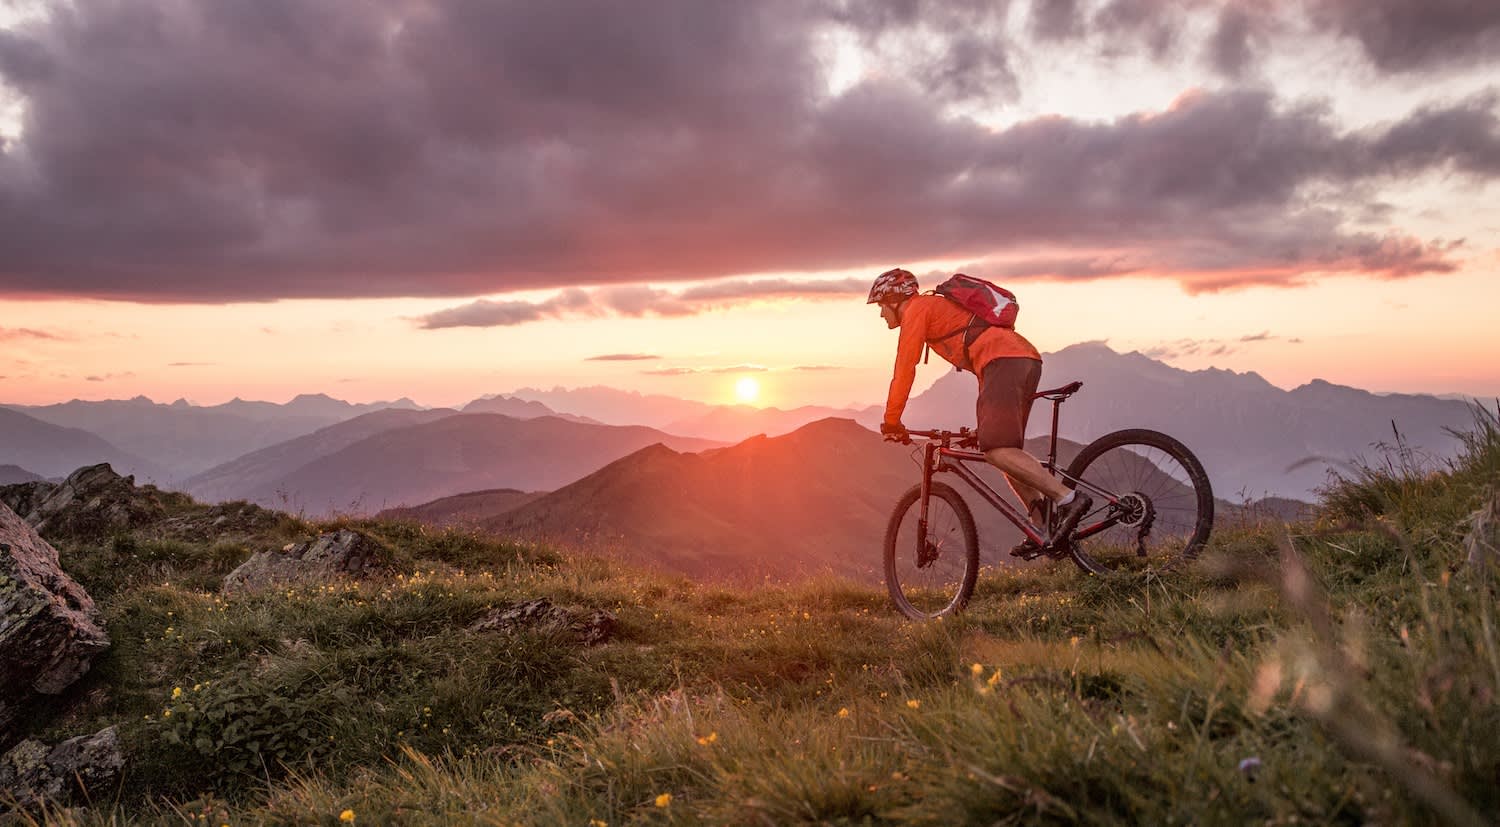 Mountain Biker on Mountain at sunset - Mountain Biker on Mountain at sunset